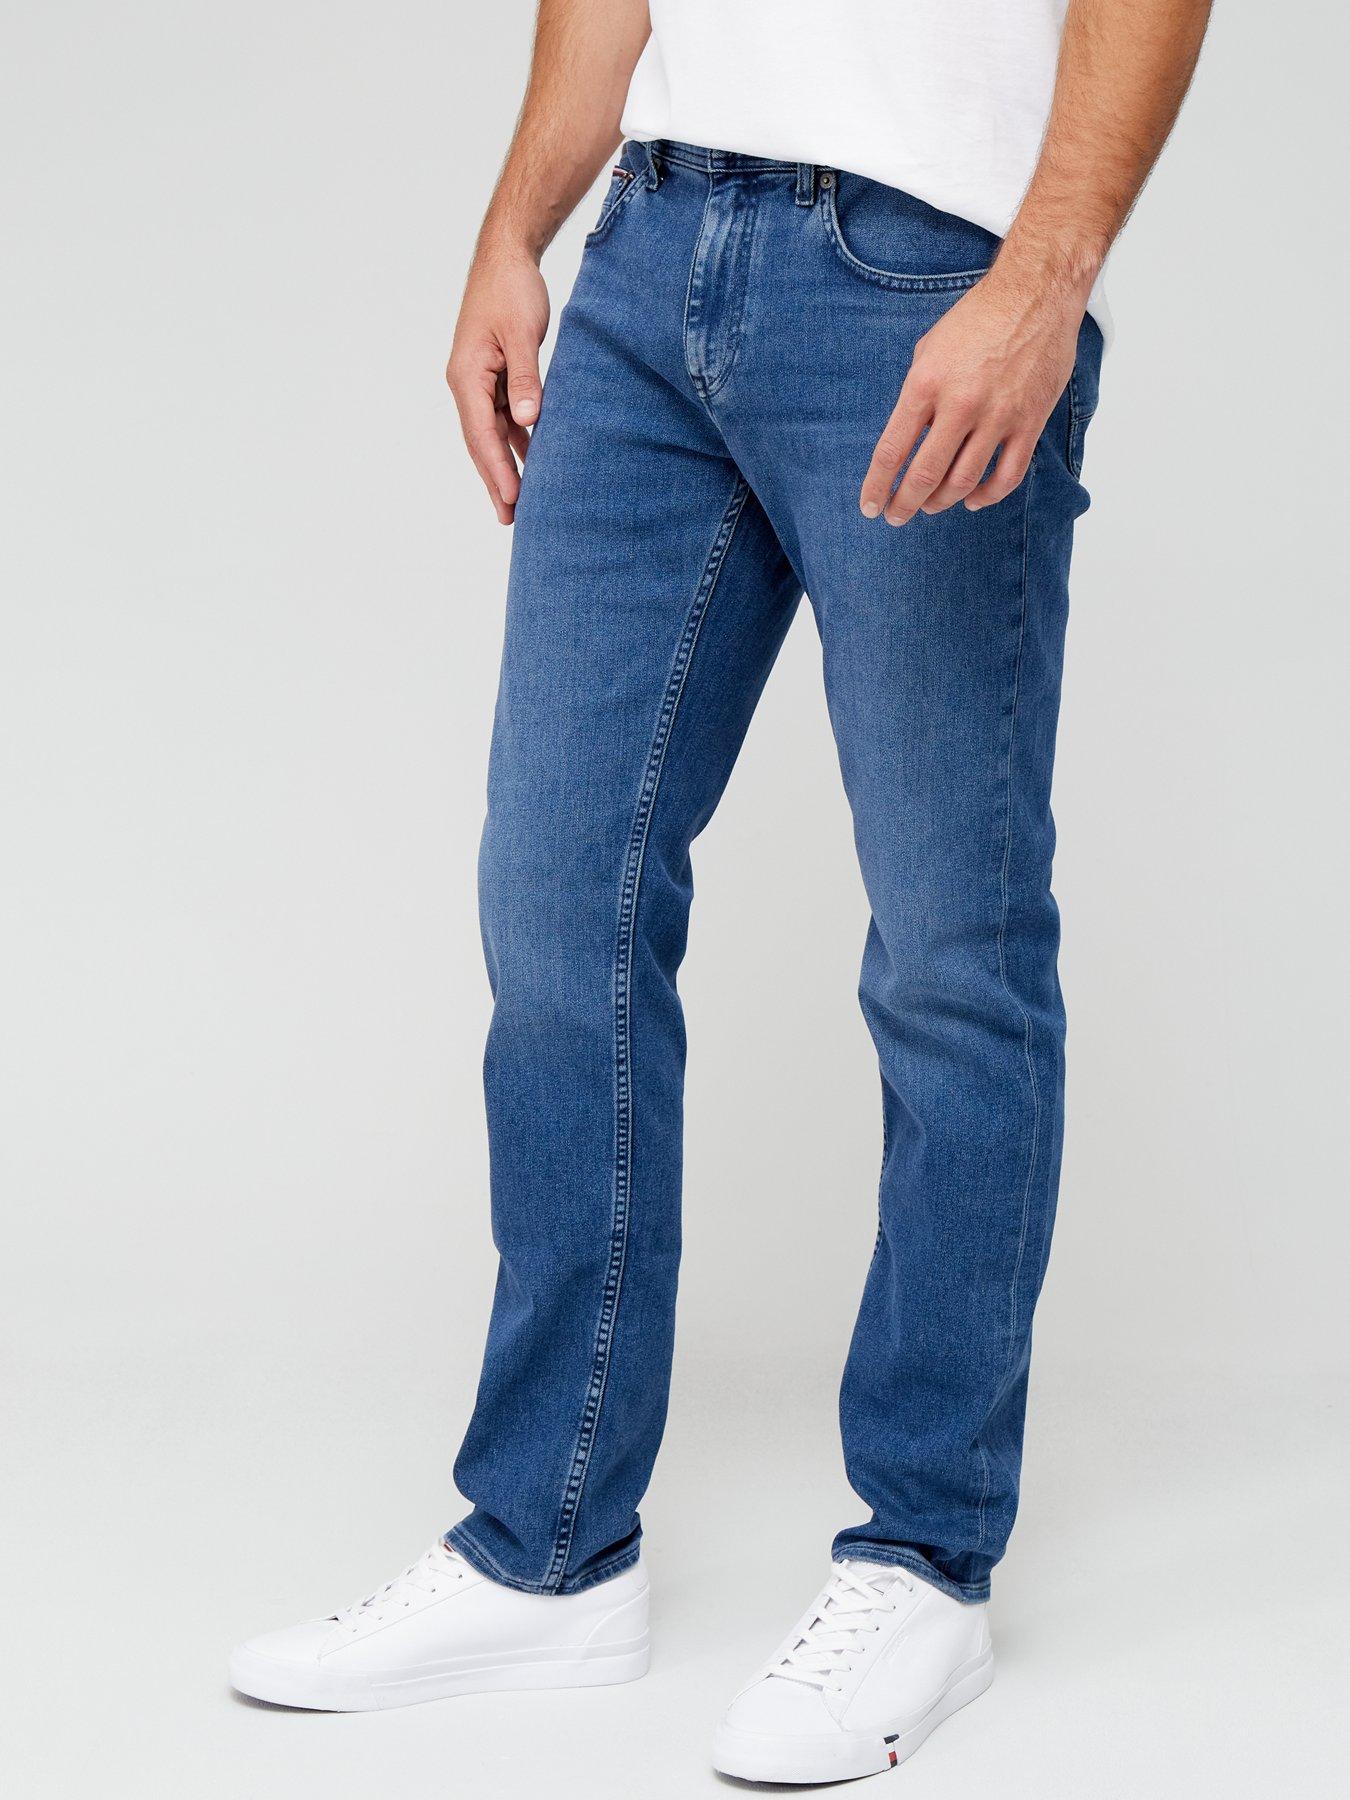 hilfiger | Jeans | Men |